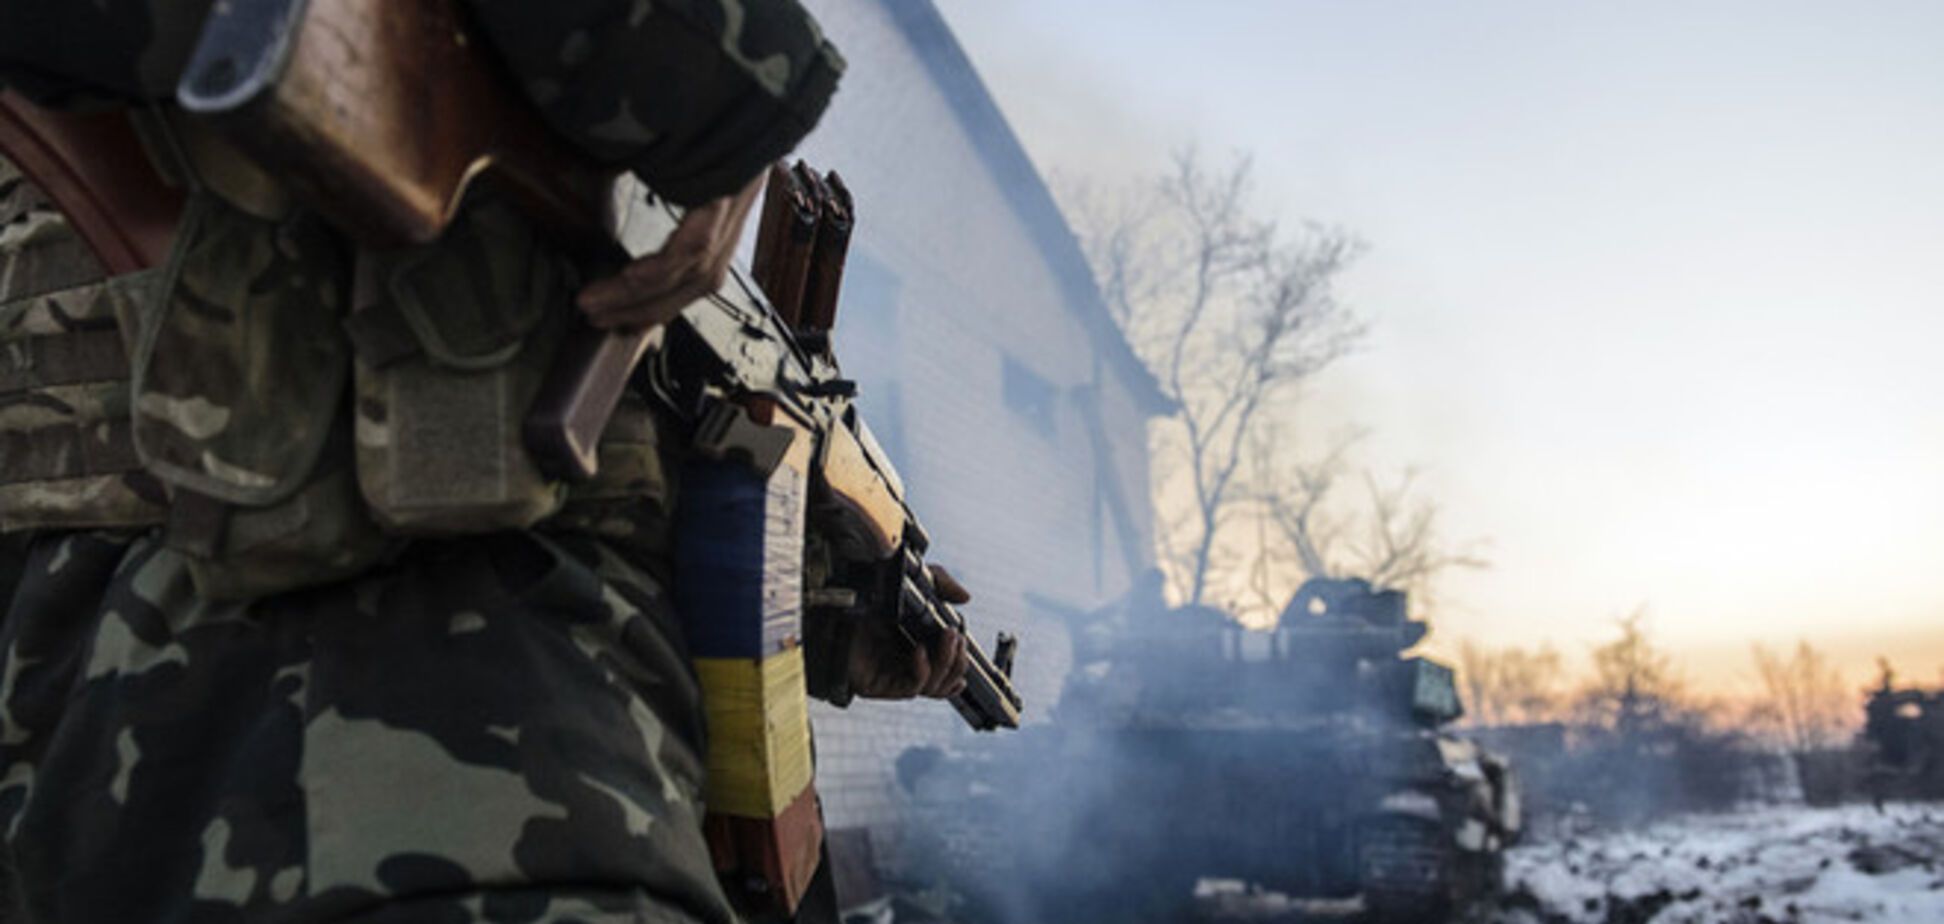 Конфлікт на Донбасі потроху 'заморожується', зовнішній світ спостерігає зі сторони - західні ЗМІ